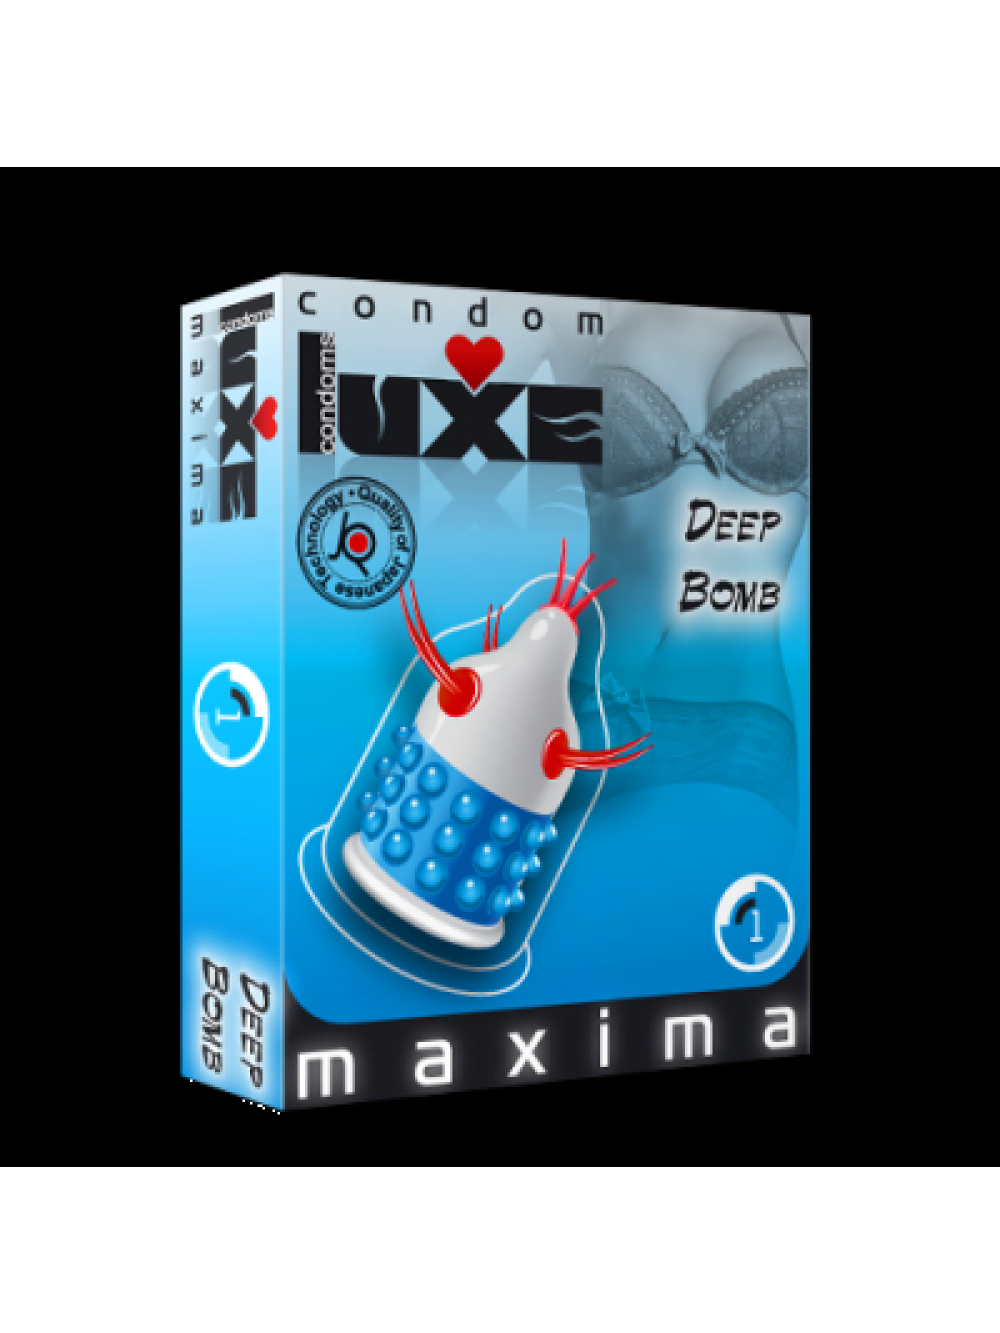 Luxe Condom Deep Bomb  6934439713283 